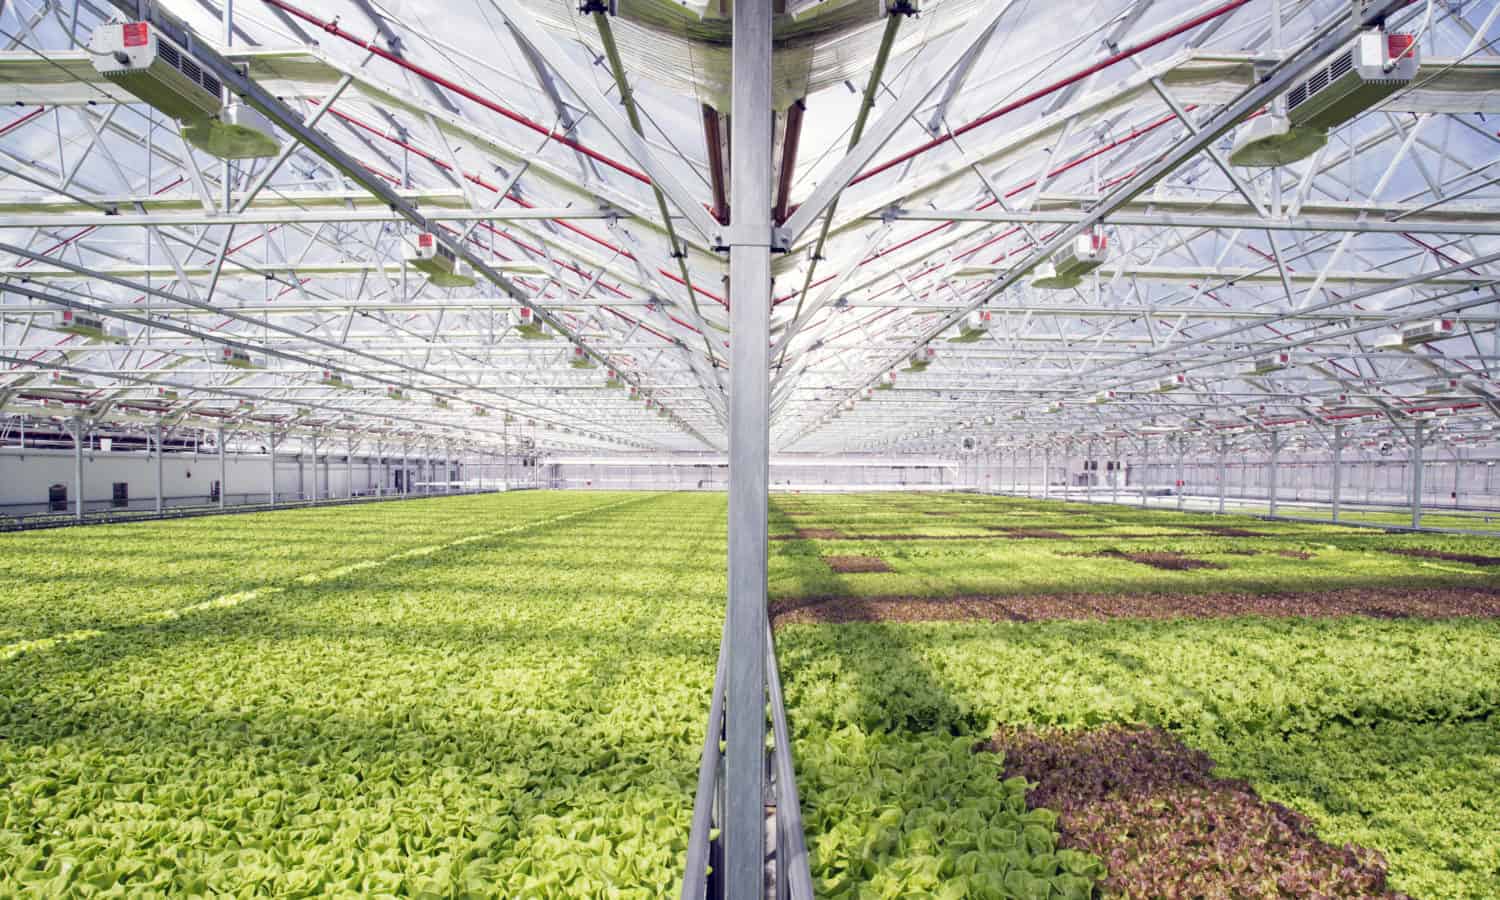 第一个商业Urban Greenhouse Gotham Greens即将来到巴尔的摩。新的100,000平方英尺的温室将为这座城市带来新鲜的果岭和新工作。